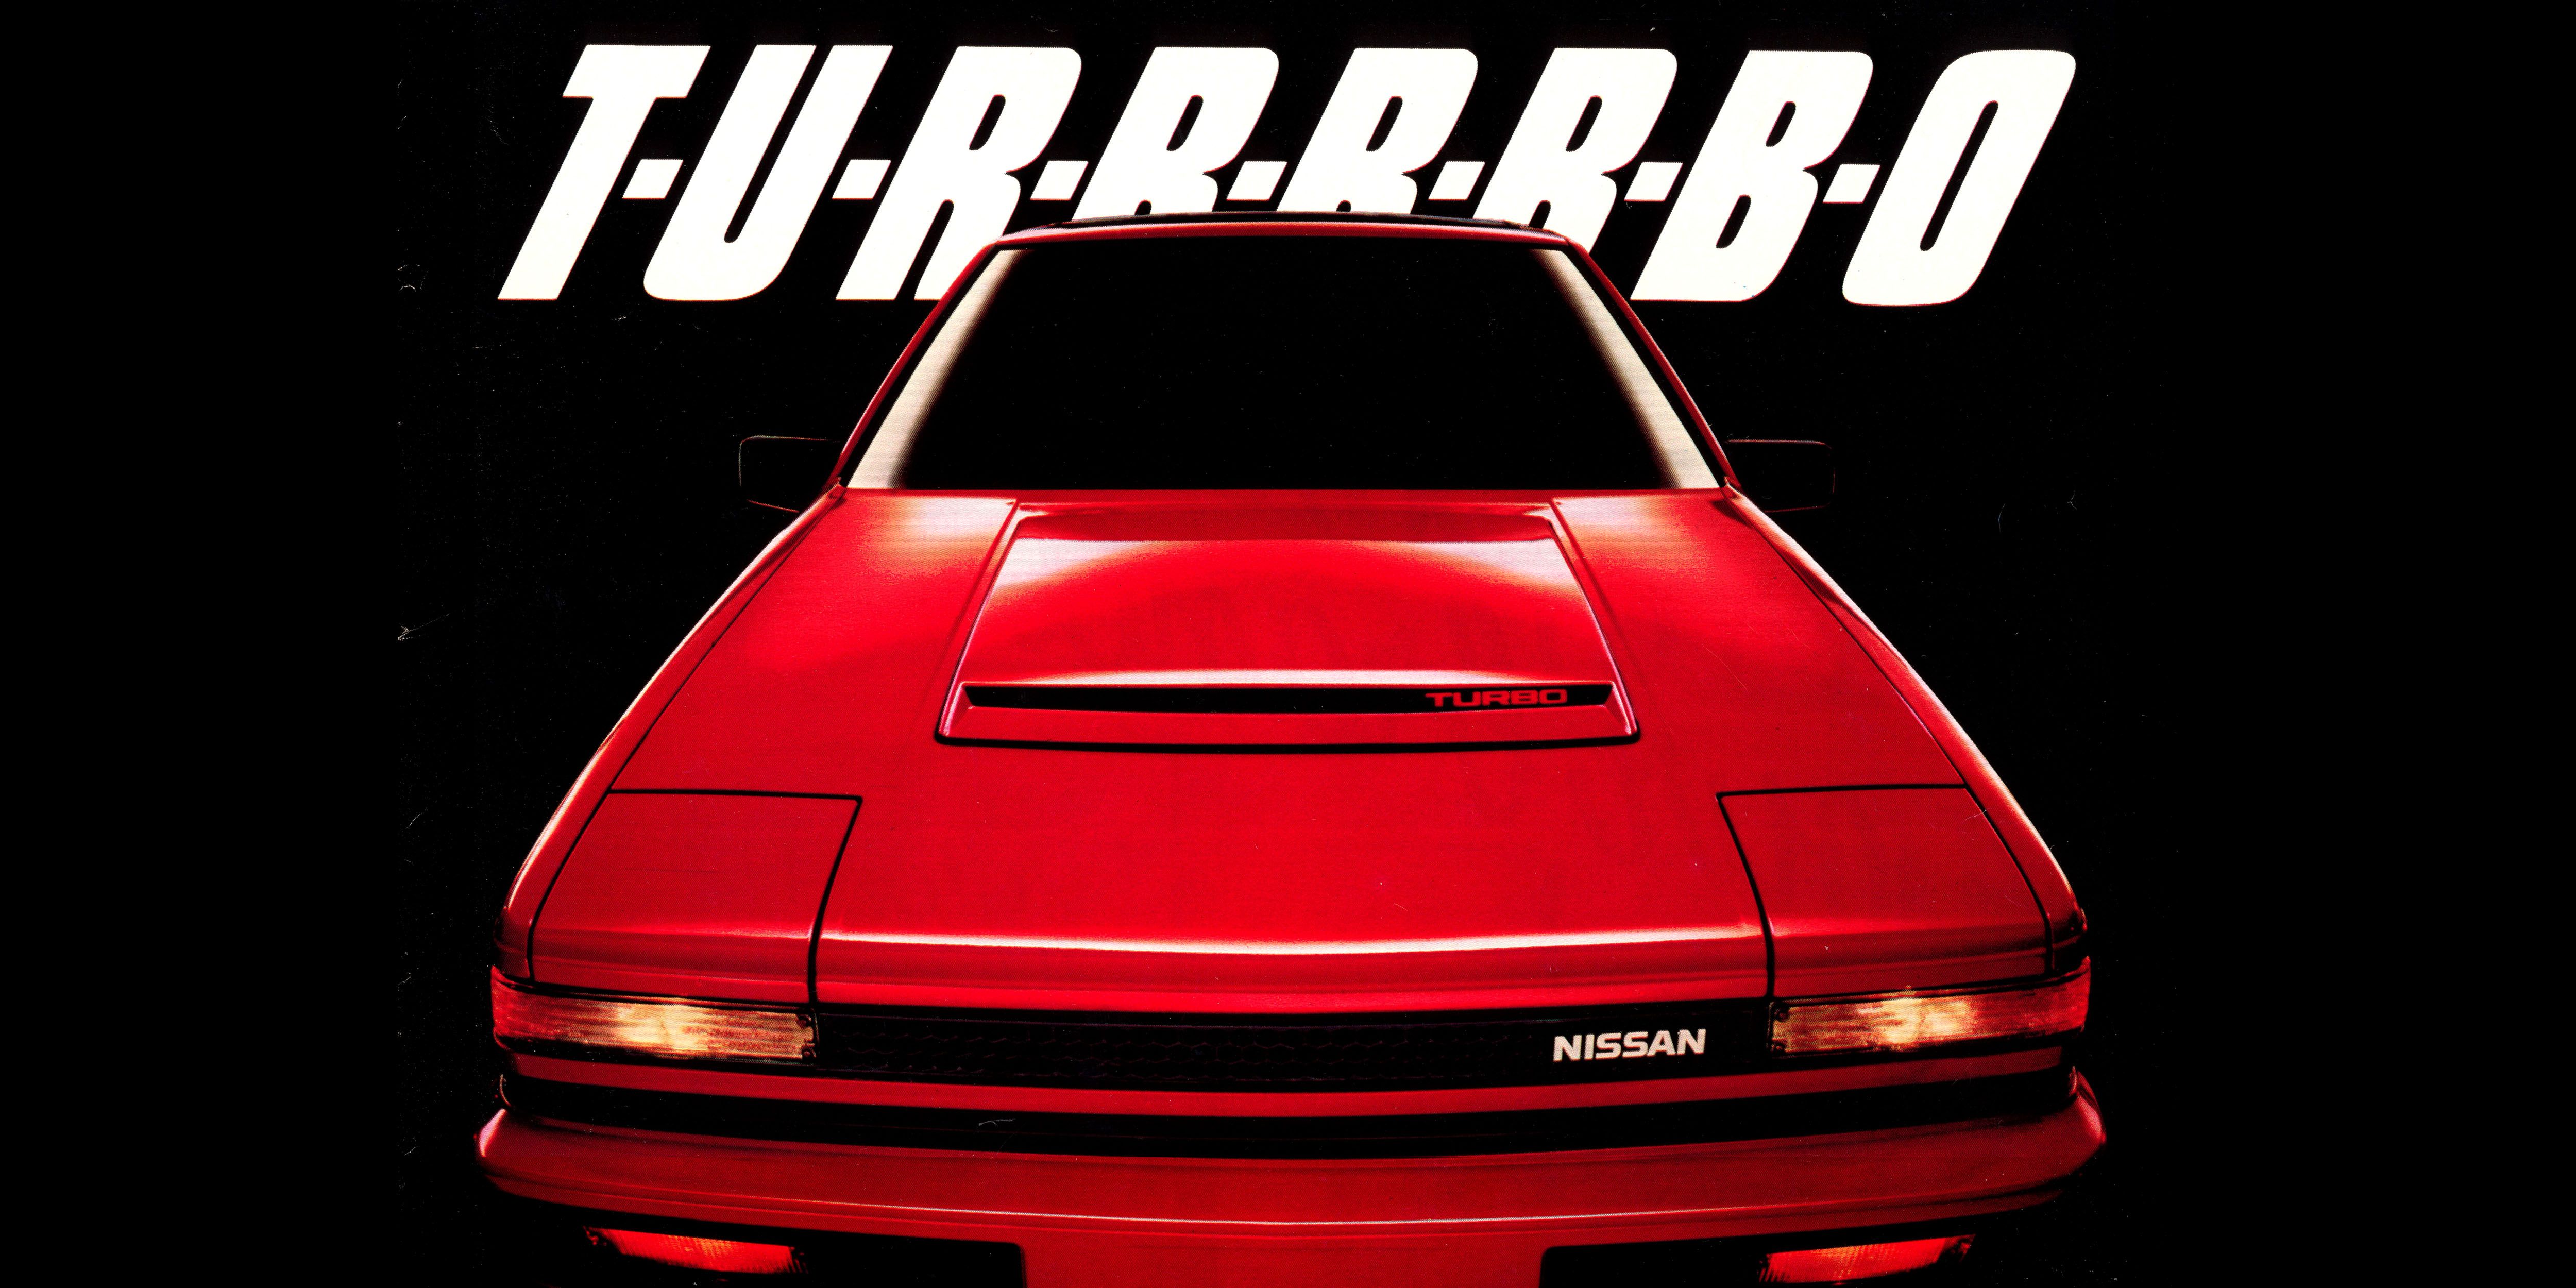 1984 Nissan 200SX T-U-R-R-R-R-B-O Has Major Motion